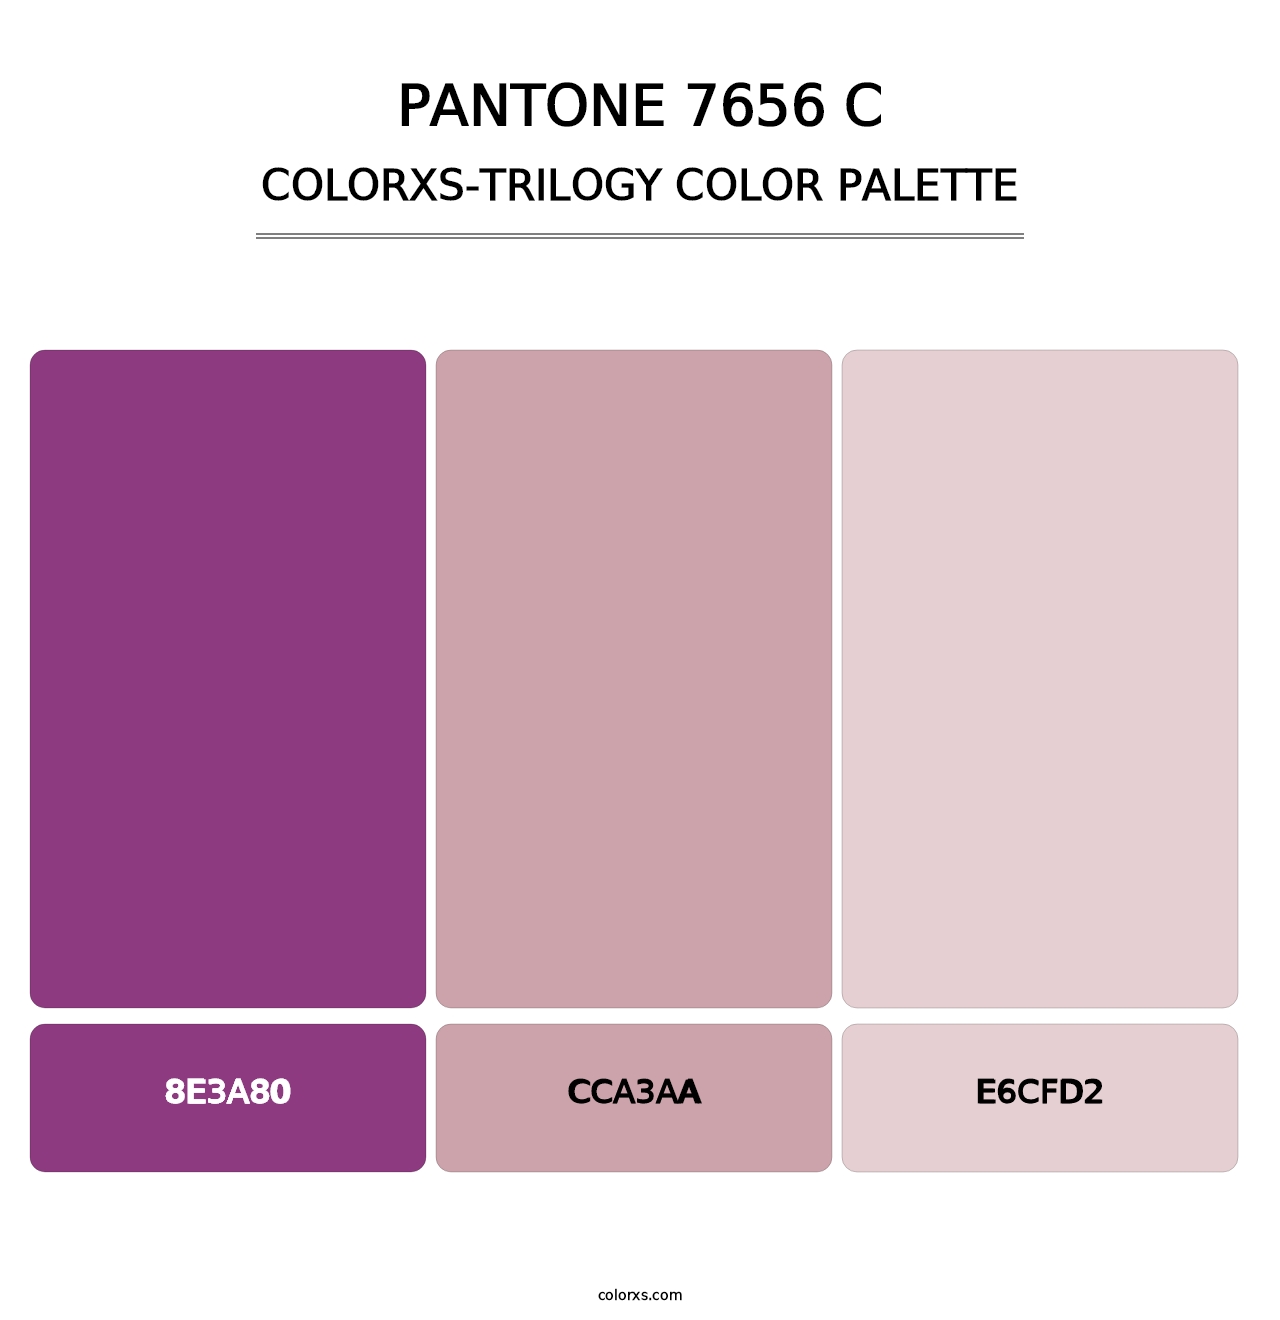 PANTONE 7656 C - Colorxs Trilogy Palette